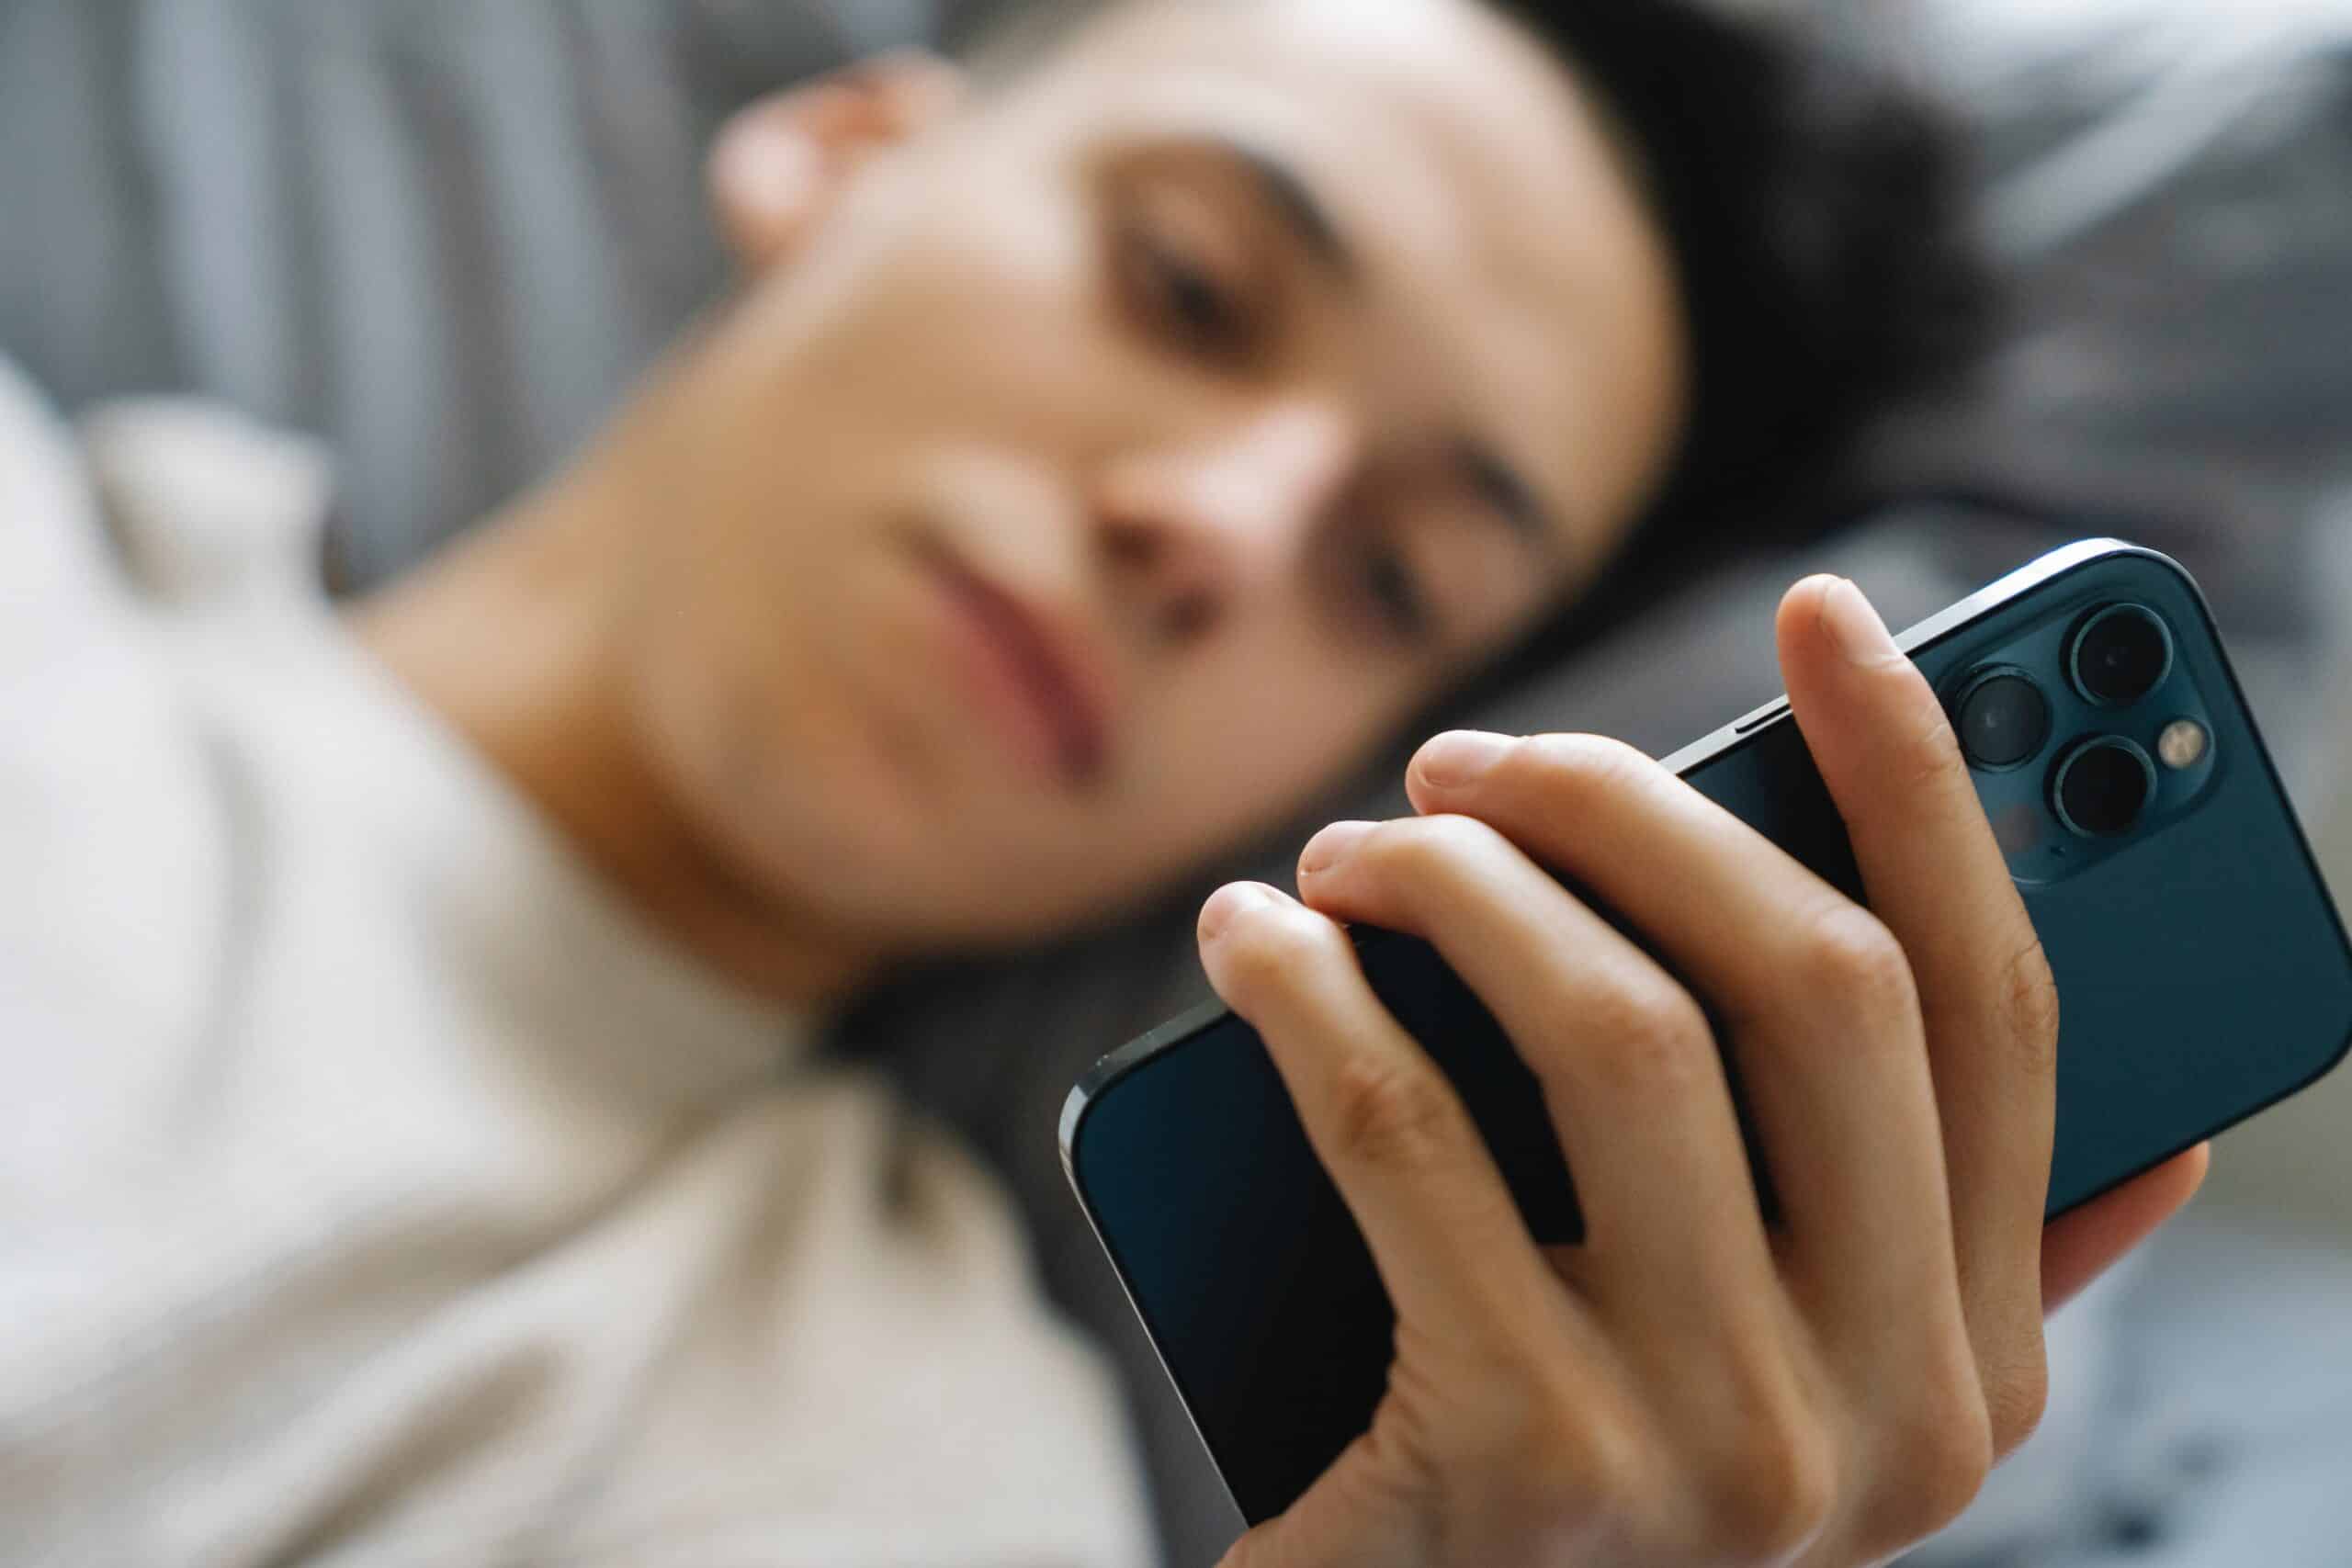 Een jongen die net wakker is, zit op zijn telefoon, wat een teken kan zijn van een telefoonverslaving en een negatieve invloed kan hebben op zijn concentratie gedurende de dag.